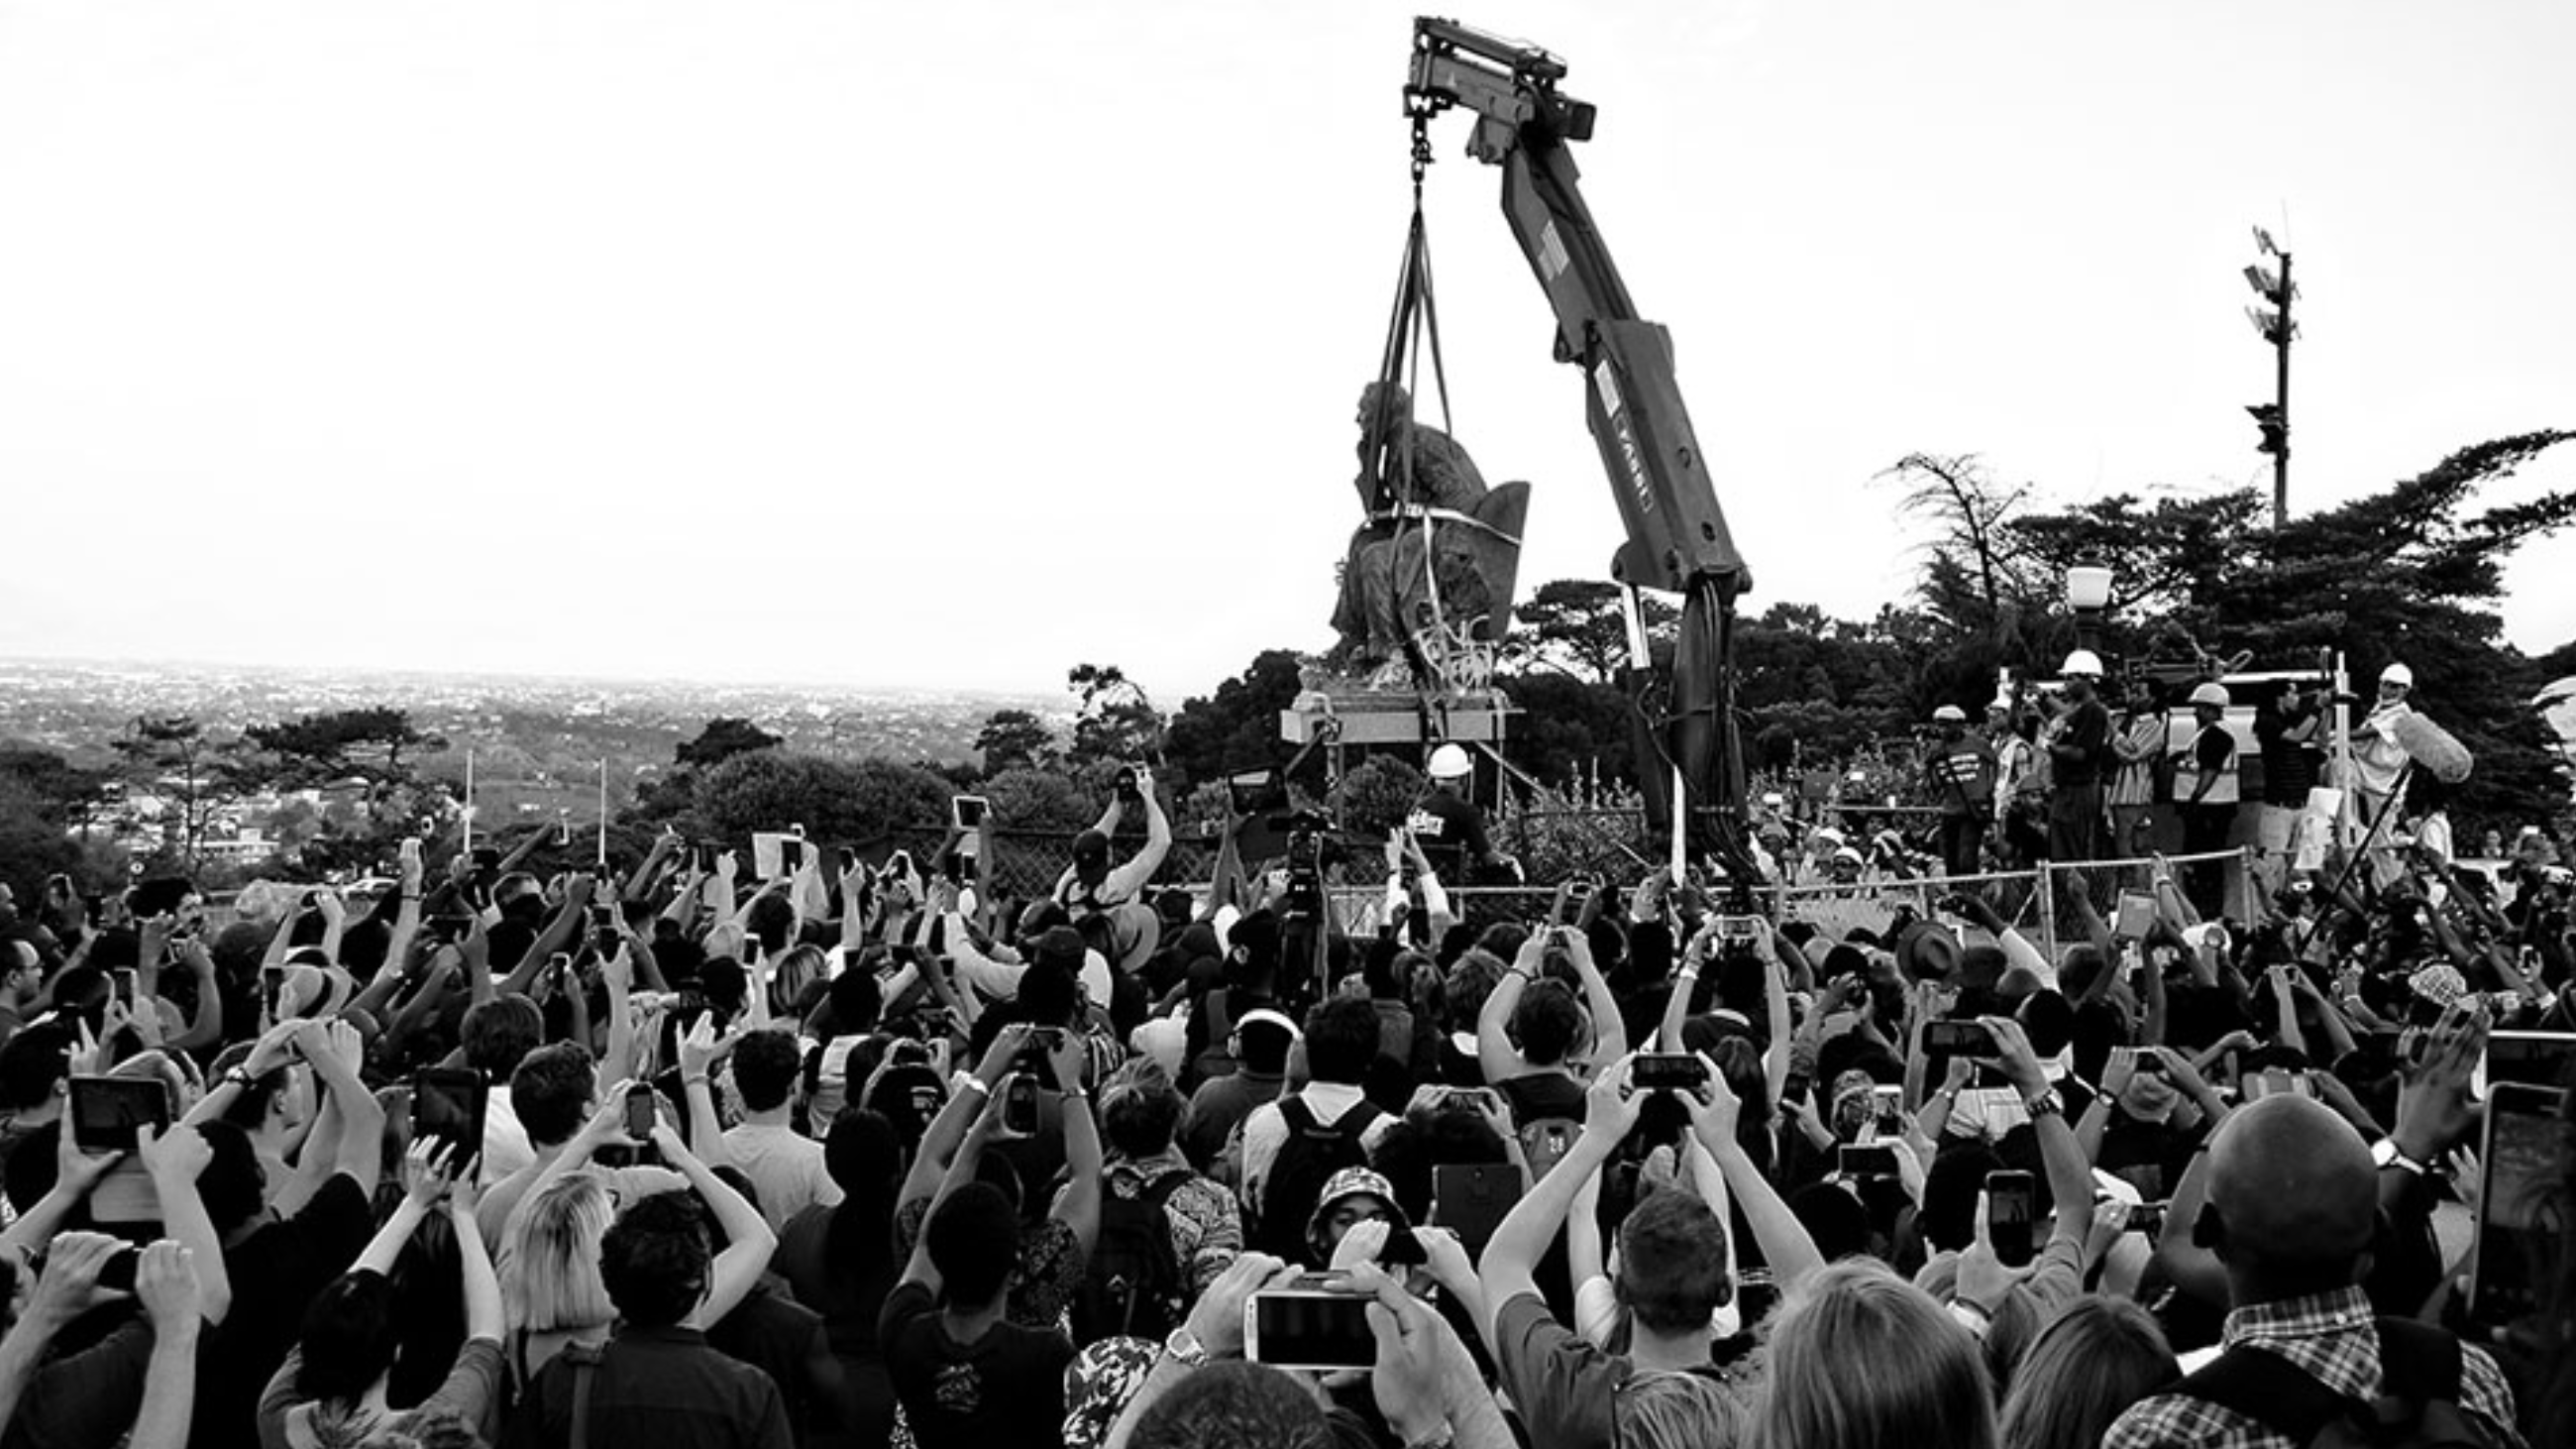 Het standbeeld van Cecil Rhodes wordt verwijderd van de universiteitscampus in Kaapstad, 9 april 2015